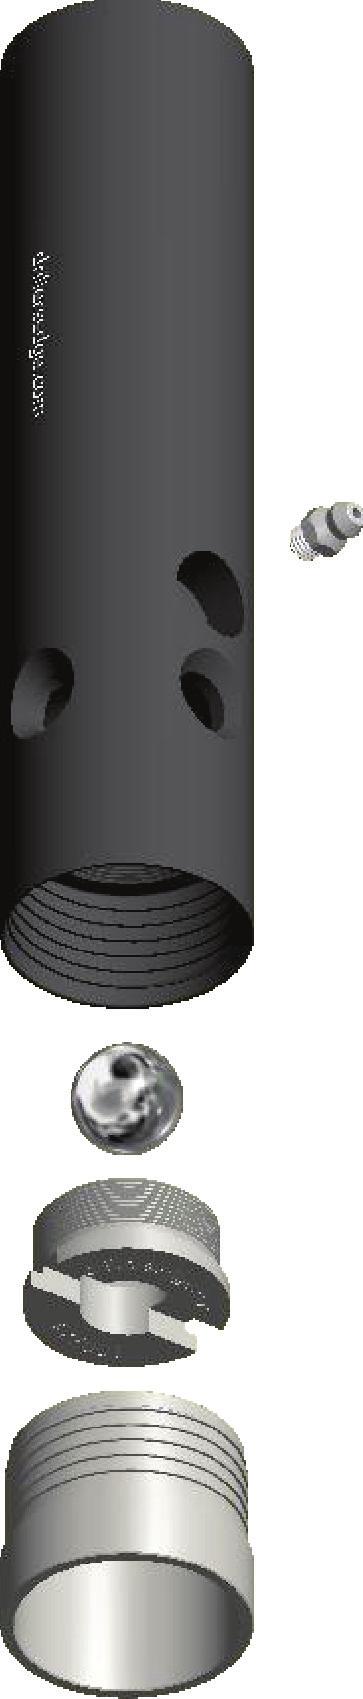 INNER TUBE CAP ASSEMBLY, B - - 0 Inner Tube Cap Assembly, B With Thread Protector 000 Inner Tube Cap